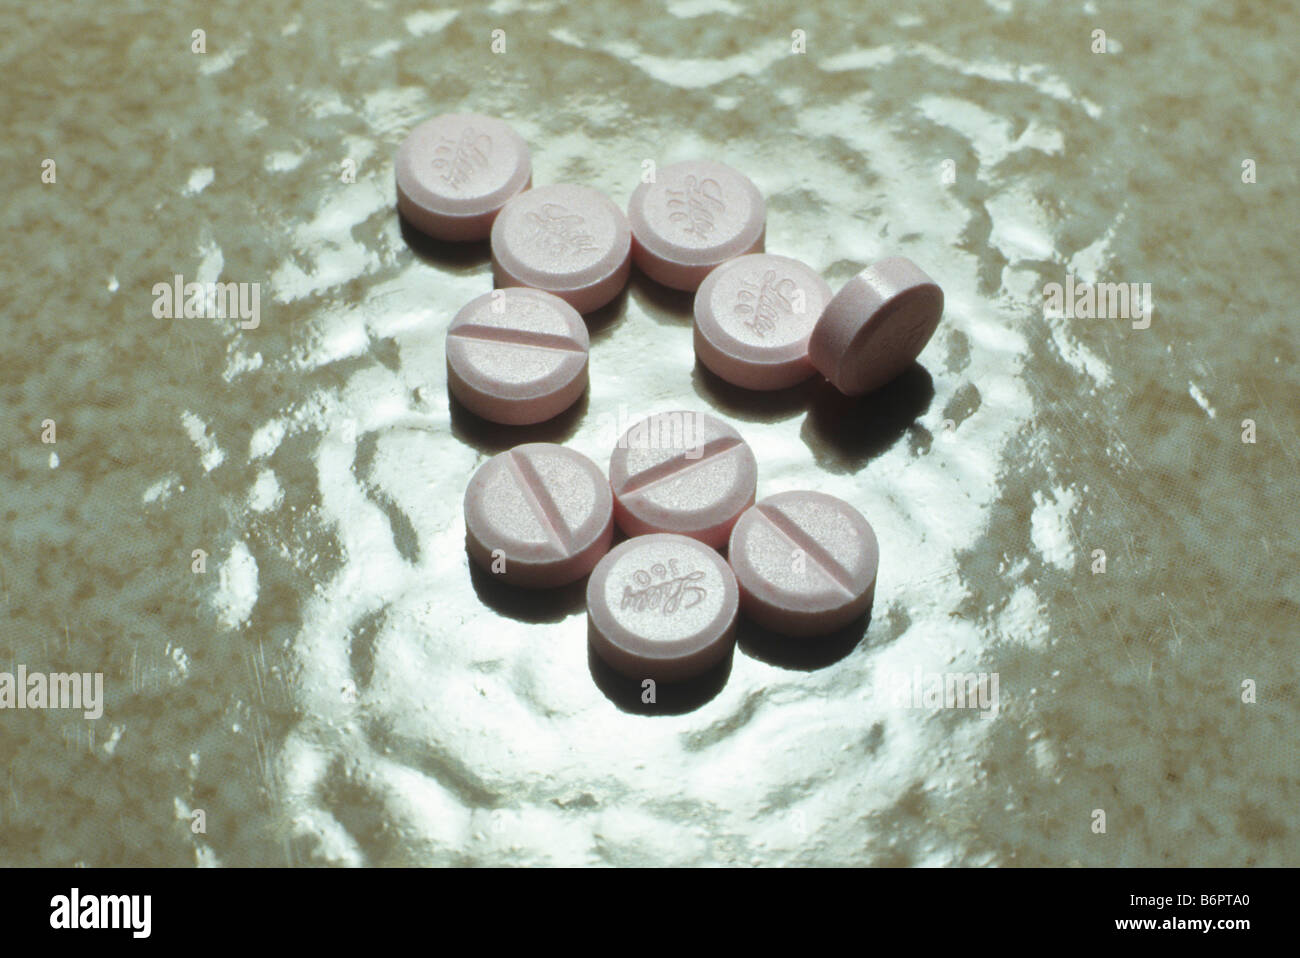 Zyprexa pillole, usato per trattare la malattia mentale, sulla superficie ondulata. Foto Stock